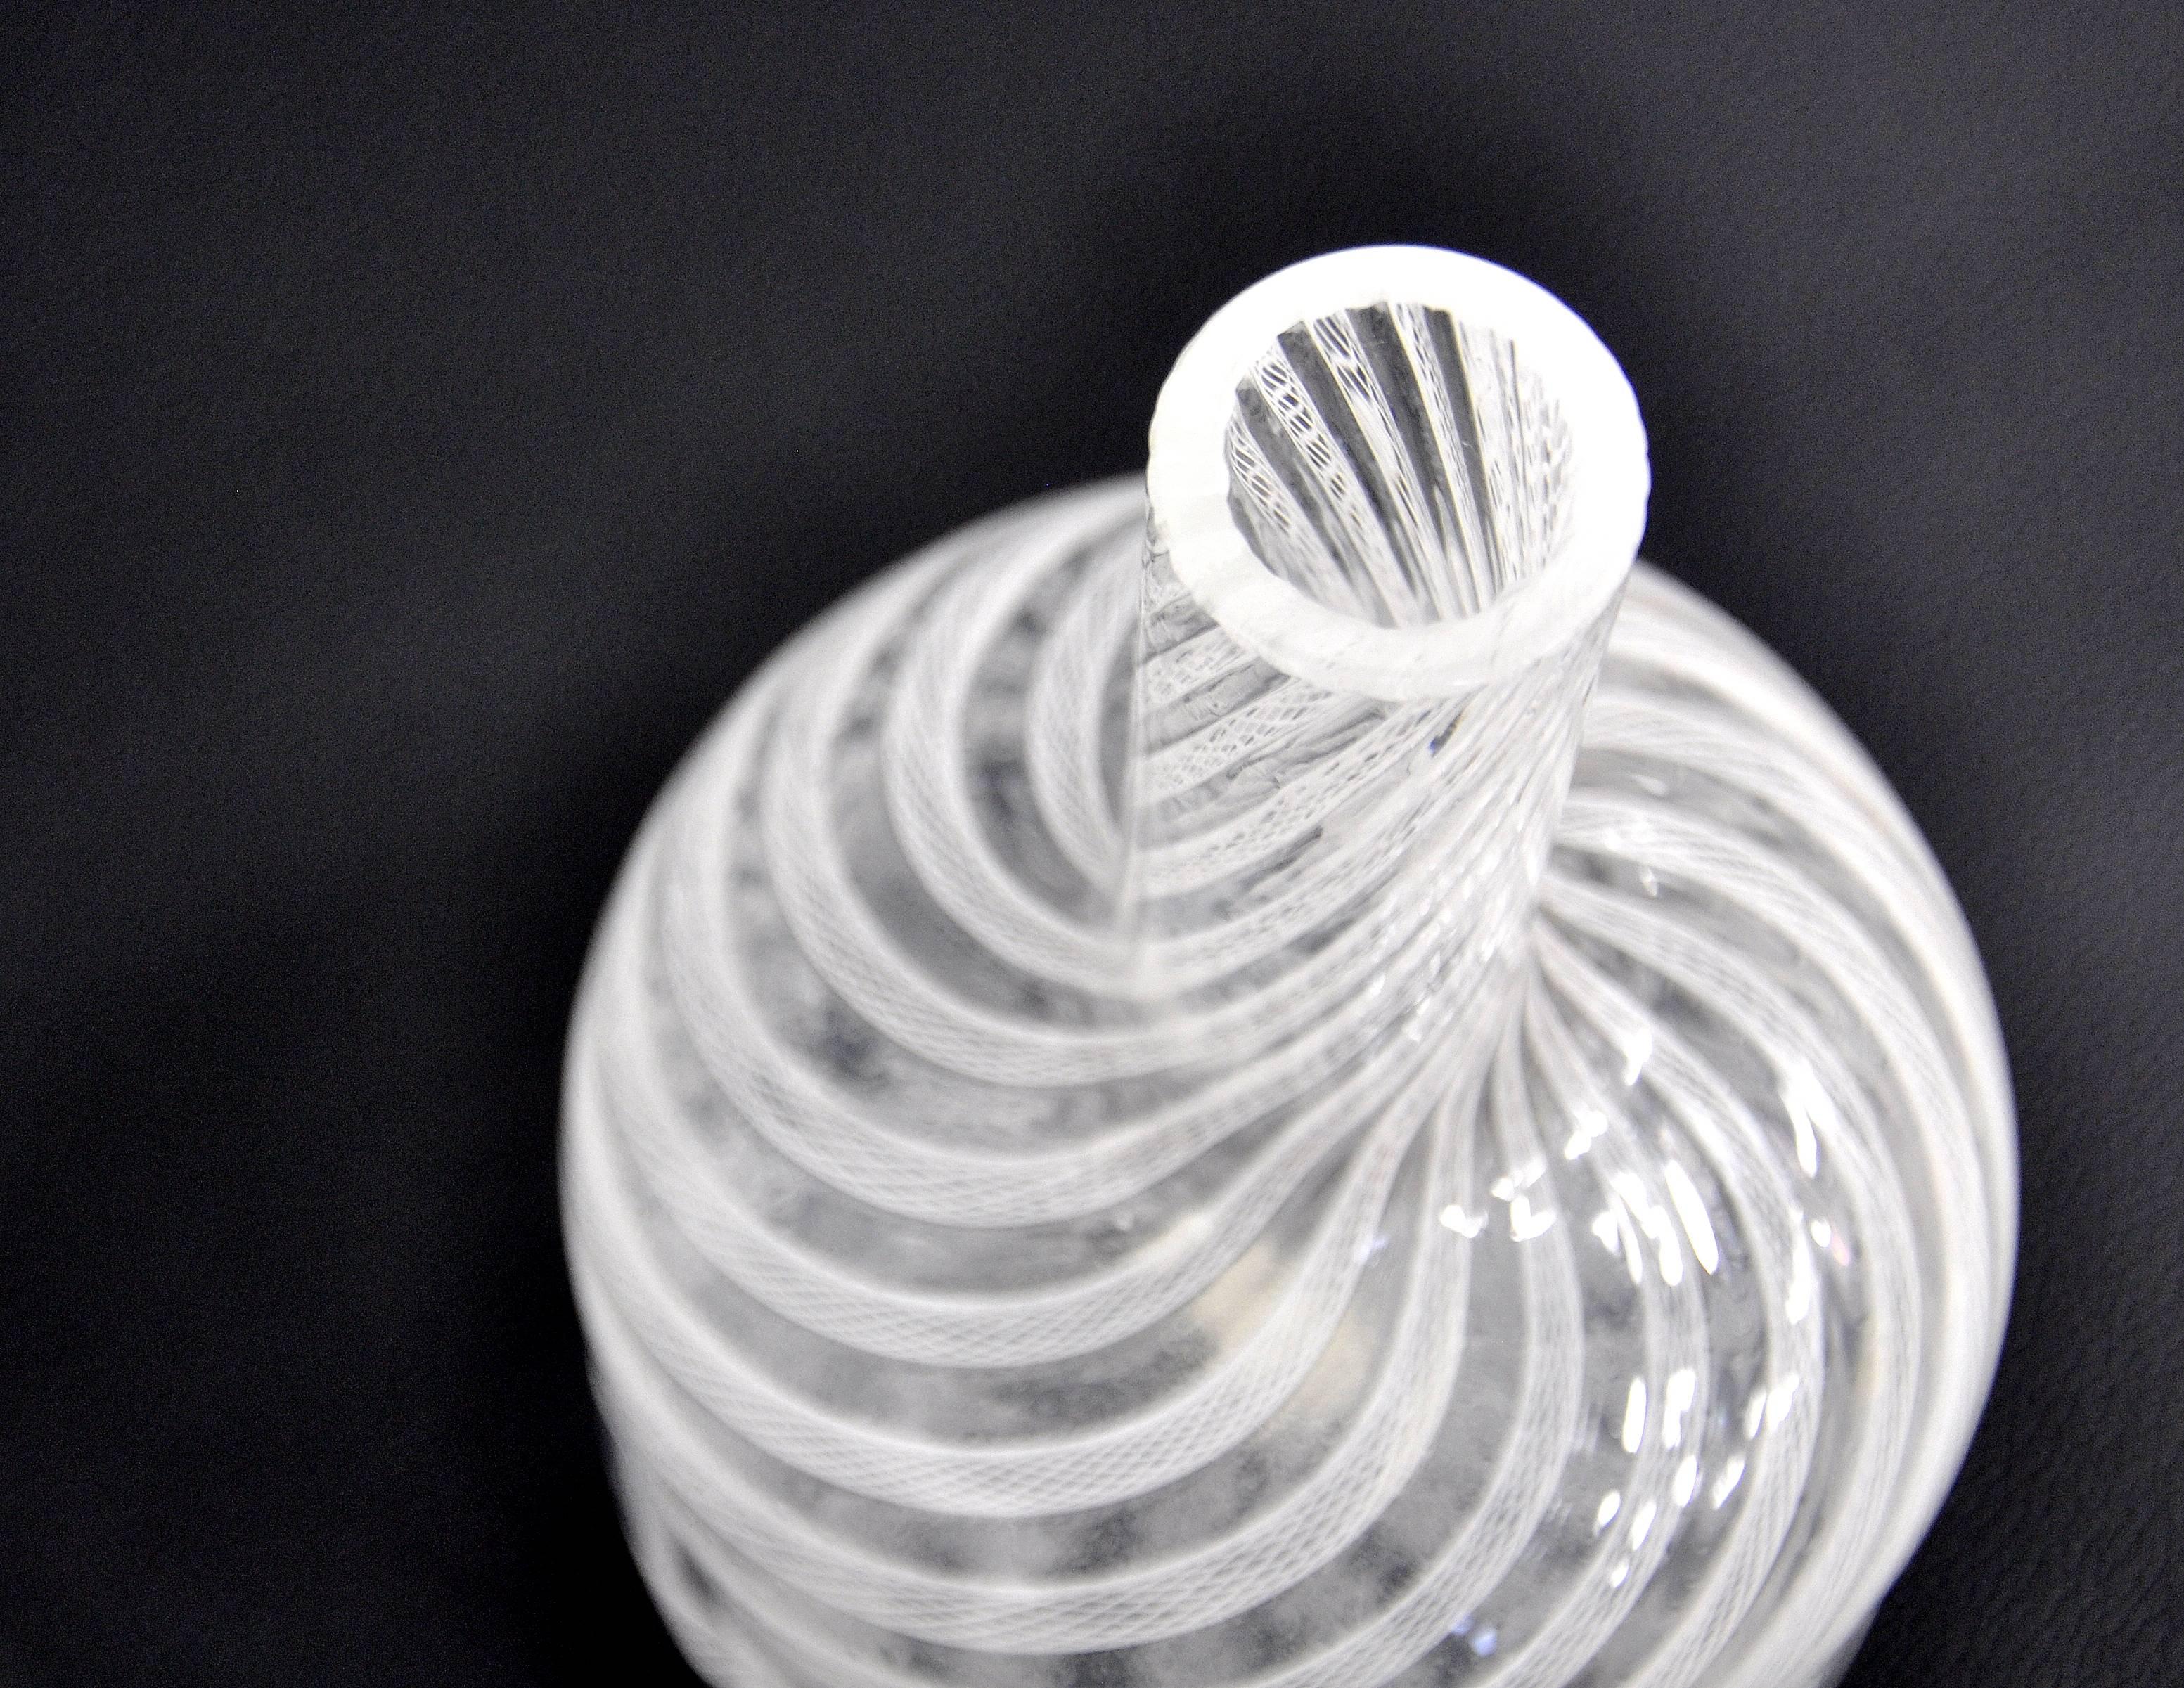 Art Glass Fratelli Toso Murano Glass Latticino Filigrana Decanter